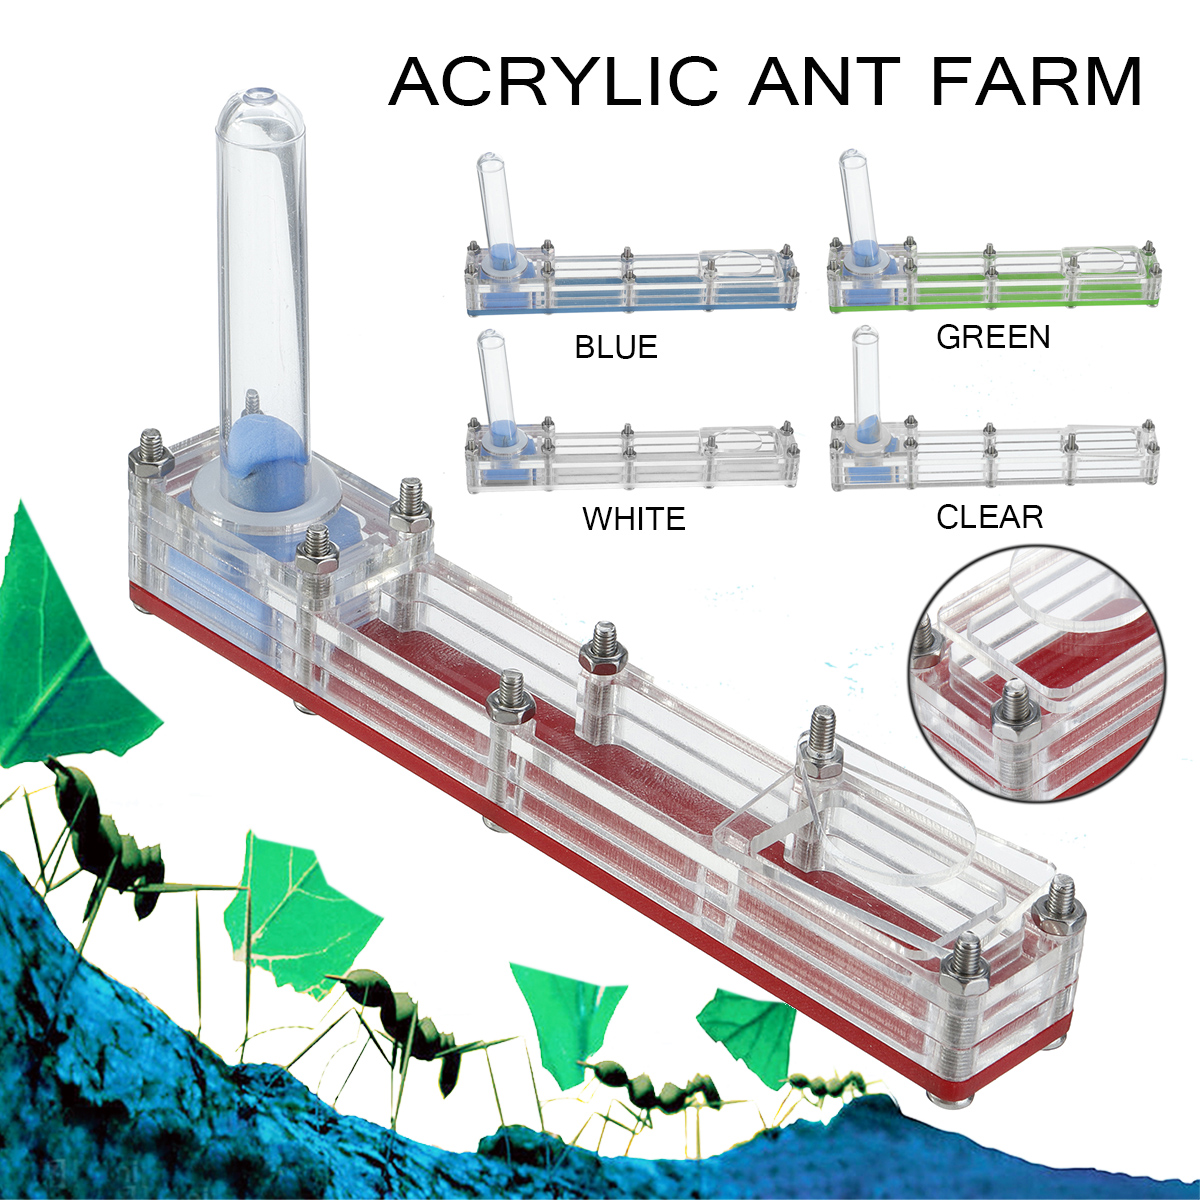 Long-Acrylic-Ant-Farm-Educational-Nest-Formicarium-Live-House-DIY-Feeding-Area-Acrylic-Farm-Insect-V-1585096-1